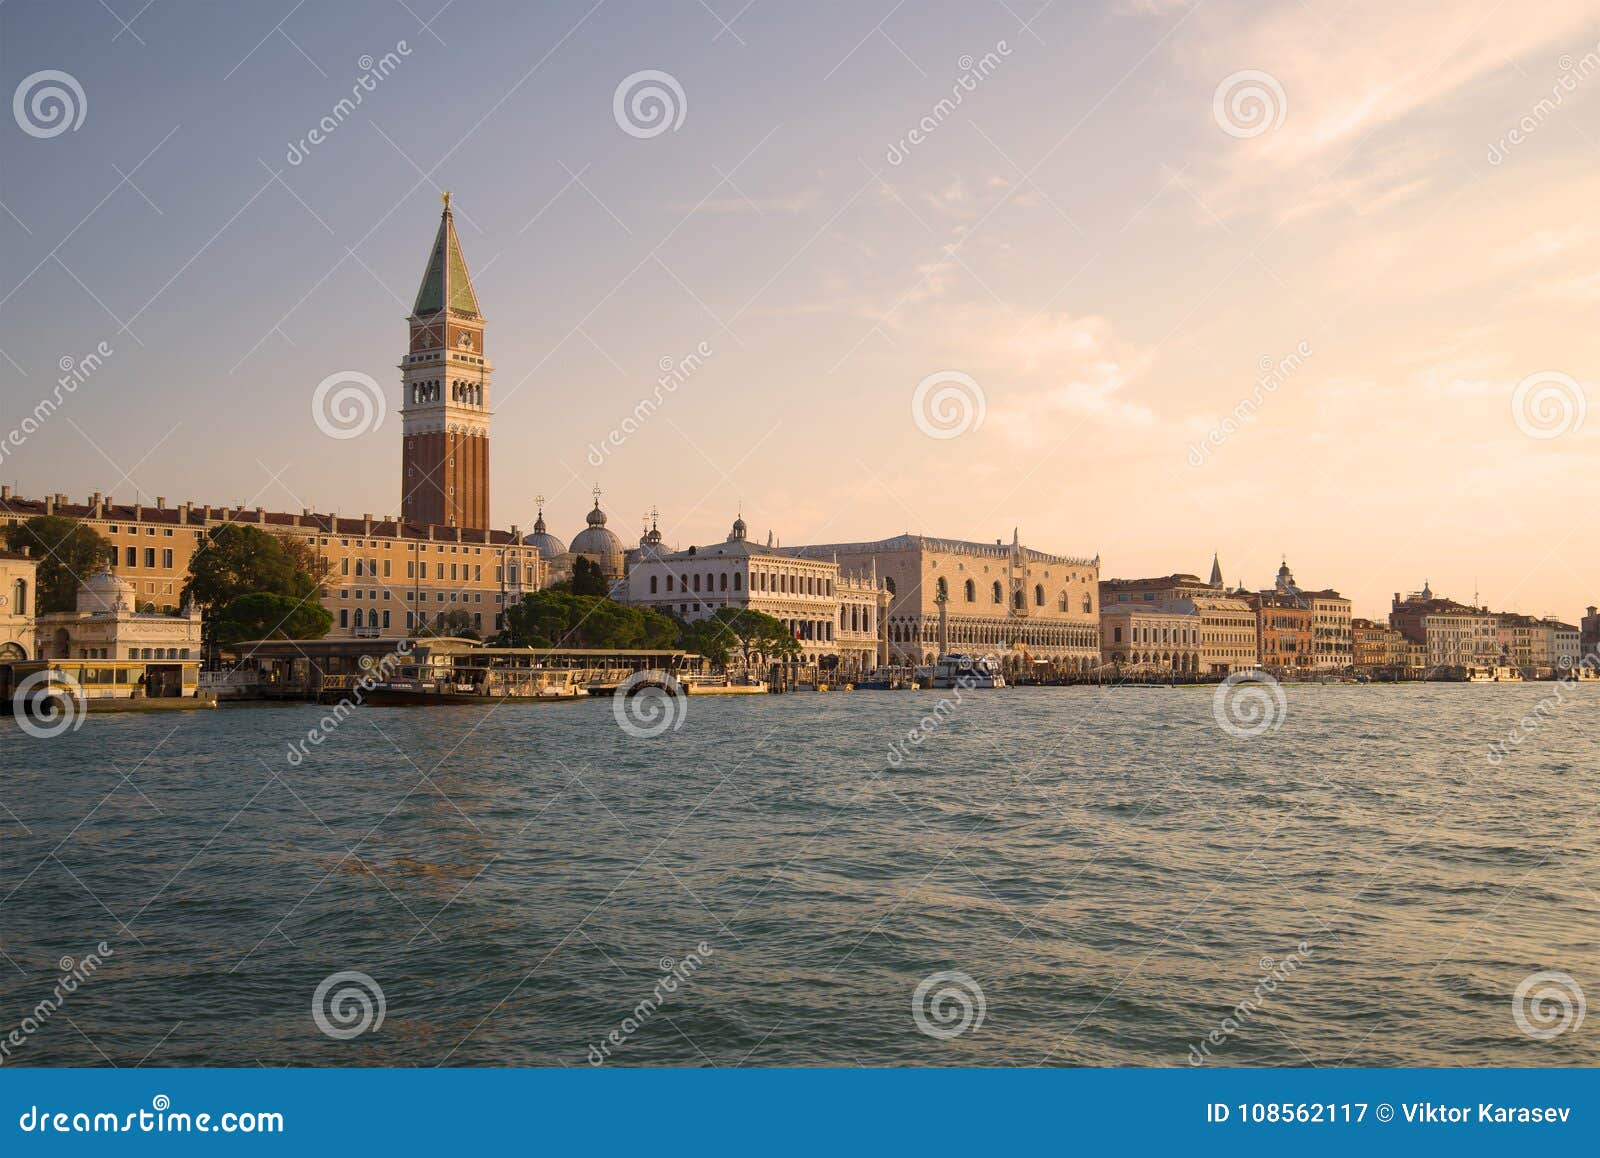 Sea Facade of Venice in the Solar September Morning. Venice, Italy